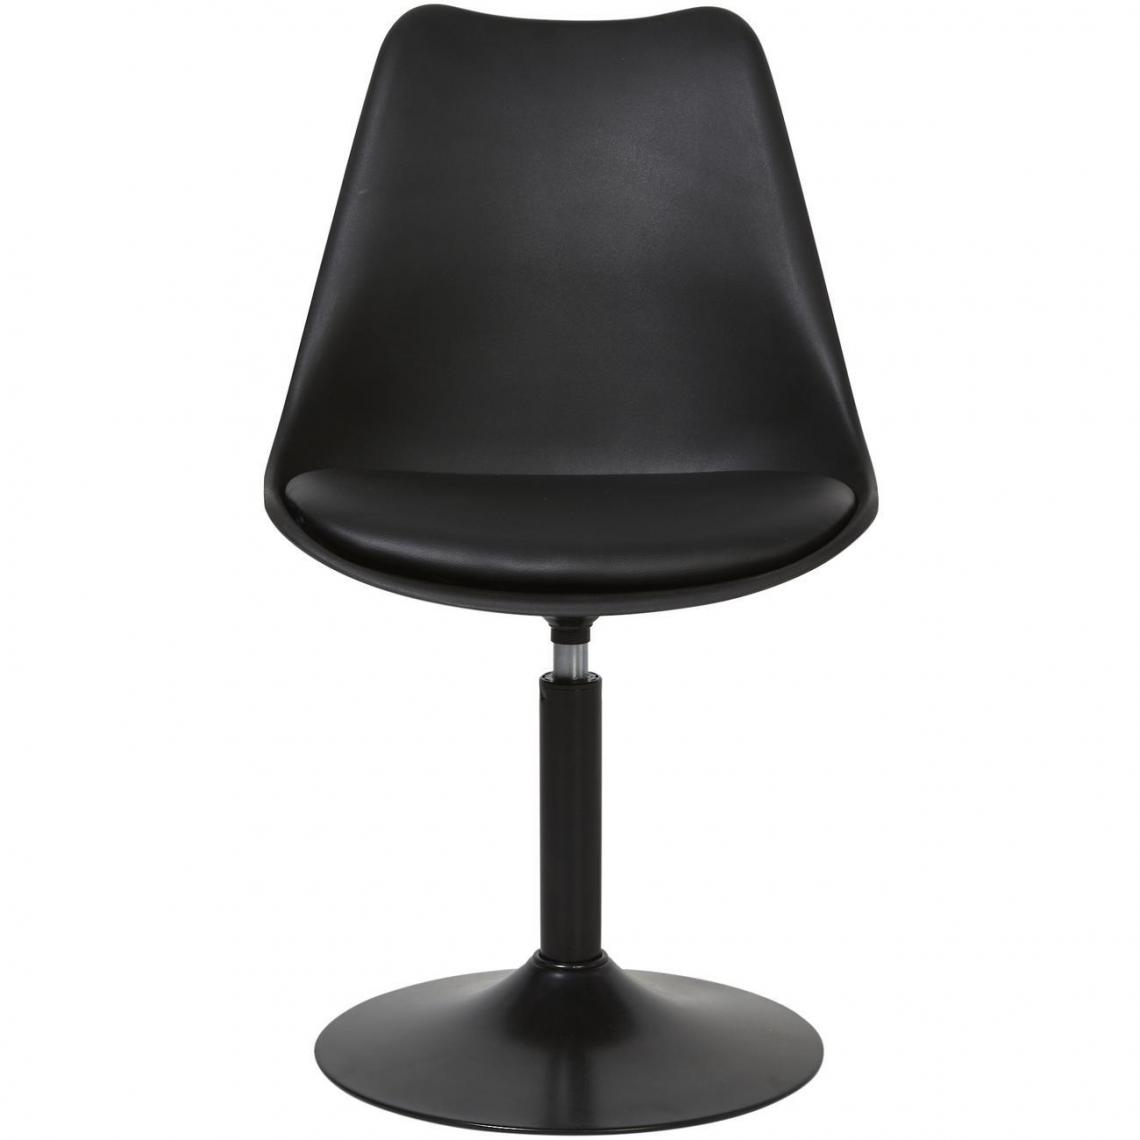 ATHM DESIGN - Lot de 2 - Chaise MARKLE Noir - assise Plastique dur ABS pieds Metal - Chaises